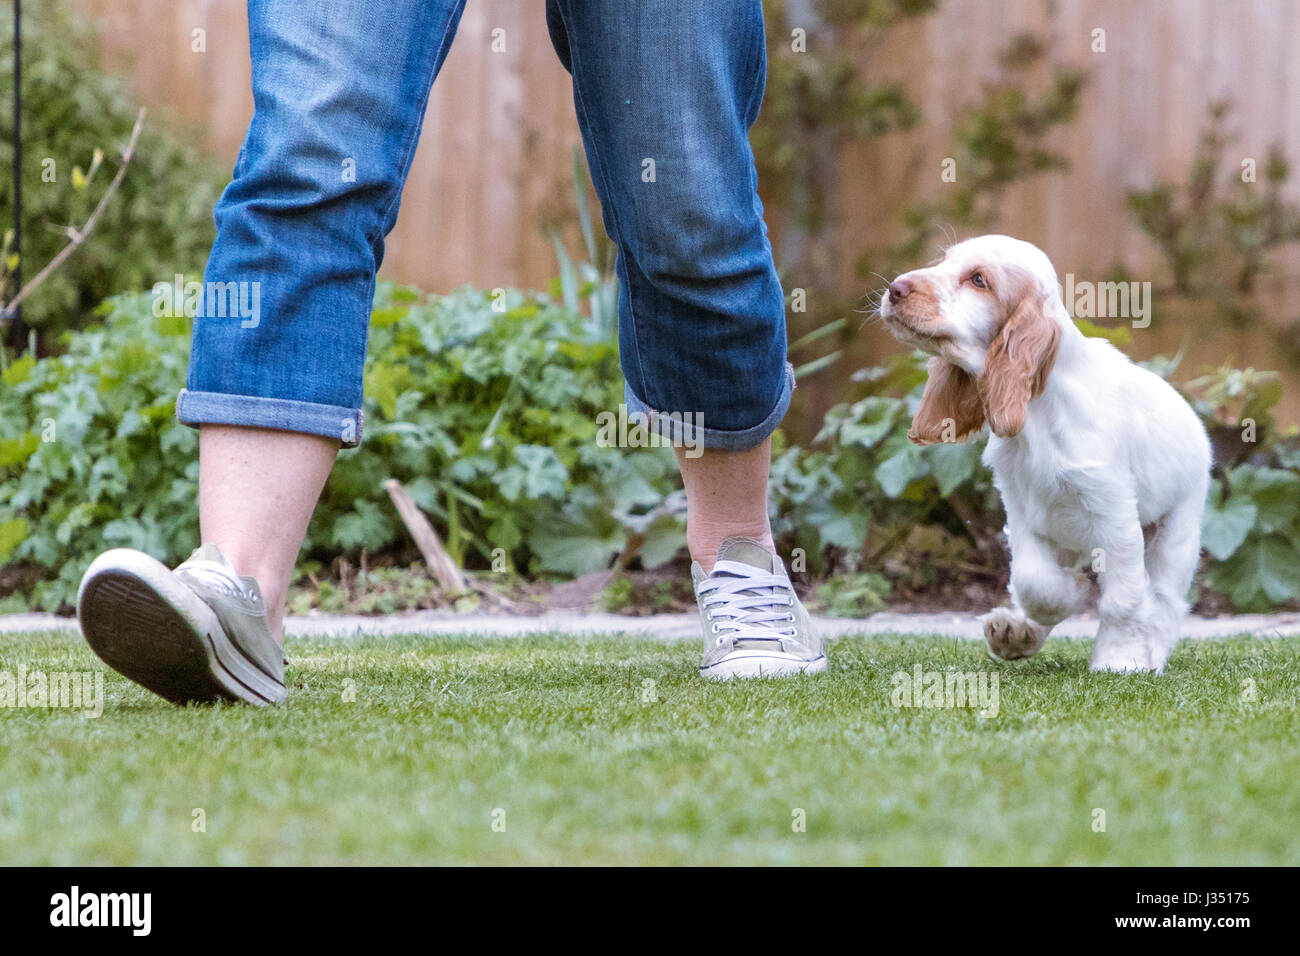 Cheerful mischievious cocker spaniel puppy happy running in garden Stock Photo